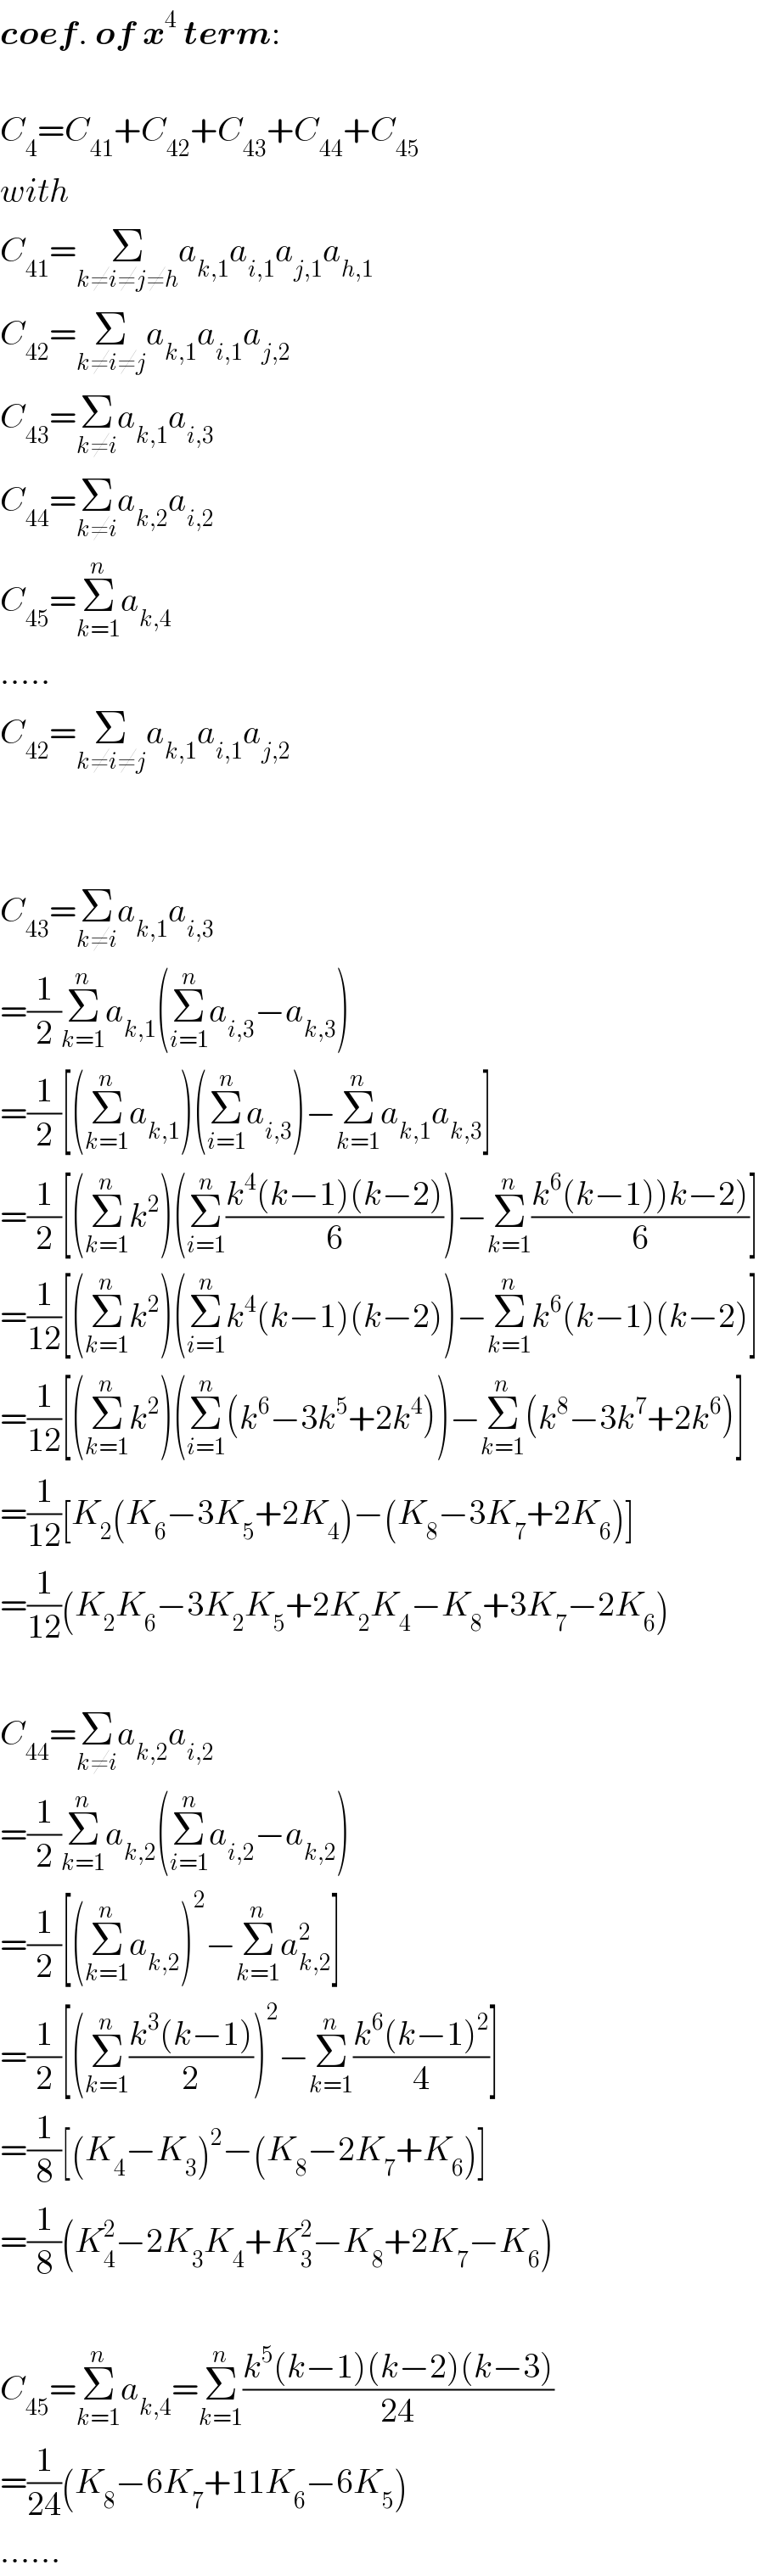 coef. of x^4  term:    C_4 =C_(41) +C_(42) +C_(43) +C_(44) +C_(45)   with  C_(41) =Σ_(k≠i≠j≠h) a_(k,1) a_(i,1) a_(j,1) a_(h,1)   C_(42) =Σ_(k≠i≠j) a_(k,1) a_(i,1) a_(j,2)   C_(43) =Σ_(k≠i) a_(k,1) a_(i,3)   C_(44) =Σ_(k≠i) a_(k,2) a_(i,2)   C_(45) =Σ_(k=1) ^n a_(k,4)   .....  C_(42) =Σ_(k≠i≠j) a_(k,1) a_(i,1) a_(j,2)       C_(43) =Σ_(k≠i) a_(k,1) a_(i,3)   =(1/2)Σ_(k=1) ^n a_(k,1) (Σ_(i=1) ^n a_(i,3) −a_(k,3) )  =(1/2)[(Σ_(k=1) ^n a_(k,1) )(Σ_(i=1) ^n a_(i,3) )−Σ_(k=1) ^n a_(k,1) a_(k,3) ]  =(1/2)[(Σ_(k=1) ^n k^2 )(Σ_(i=1) ^n ((k^4 (k−1)(k−2))/6))−Σ_(k=1) ^n ((k^6 (k−1))k−2))/6)]  =(1/(12))[(Σ_(k=1) ^n k^2 )(Σ_(i=1) ^n k^4 (k−1)(k−2))−Σ_(k=1) ^n k^6 (k−1)(k−2)]  =(1/(12))[(Σ_(k=1) ^n k^2 )(Σ_(i=1) ^n (k^6 −3k^5 +2k^4 ))−Σ_(k=1) ^n (k^8 −3k^7 +2k^6 )]  =(1/(12))[K_2 (K_6 −3K_5 +2K_4 )−(K_8 −3K_7 +2K_6 )]  =(1/(12))(K_2 K_6 −3K_2 K_5 +2K_2 K_4 −K_8 +3K_7 −2K_6 )    C_(44) =Σ_(k≠i) a_(k,2) a_(i,2)   =(1/2)Σ_(k=1) ^n a_(k,2) (Σ_(i=1) ^n a_(i,2) −a_(k,2) )  =(1/2)[(Σ_(k=1) ^n a_(k,2) )^2 −Σ_(k=1) ^n a_(k,2) ^2 ]  =(1/2)[(Σ_(k=1) ^n ((k^3 (k−1))/2))^2 −Σ_(k=1) ^n ((k^6 (k−1)^2 )/4)]  =(1/8)[(K_4 −K_3 )^2 −(K_8 −2K_7 +K_6 )]  =(1/8)(K_4 ^2 −2K_3 K_4 +K_3 ^2 −K_8 +2K_7 −K_6 )    C_(45) =Σ_(k=1) ^n a_(k,4) =Σ_(k=1) ^n ((k^5 (k−1)(k−2)(k−3))/(24))  =(1/(24))(K_8 −6K_7 +11K_6 −6K_5 )  ......  